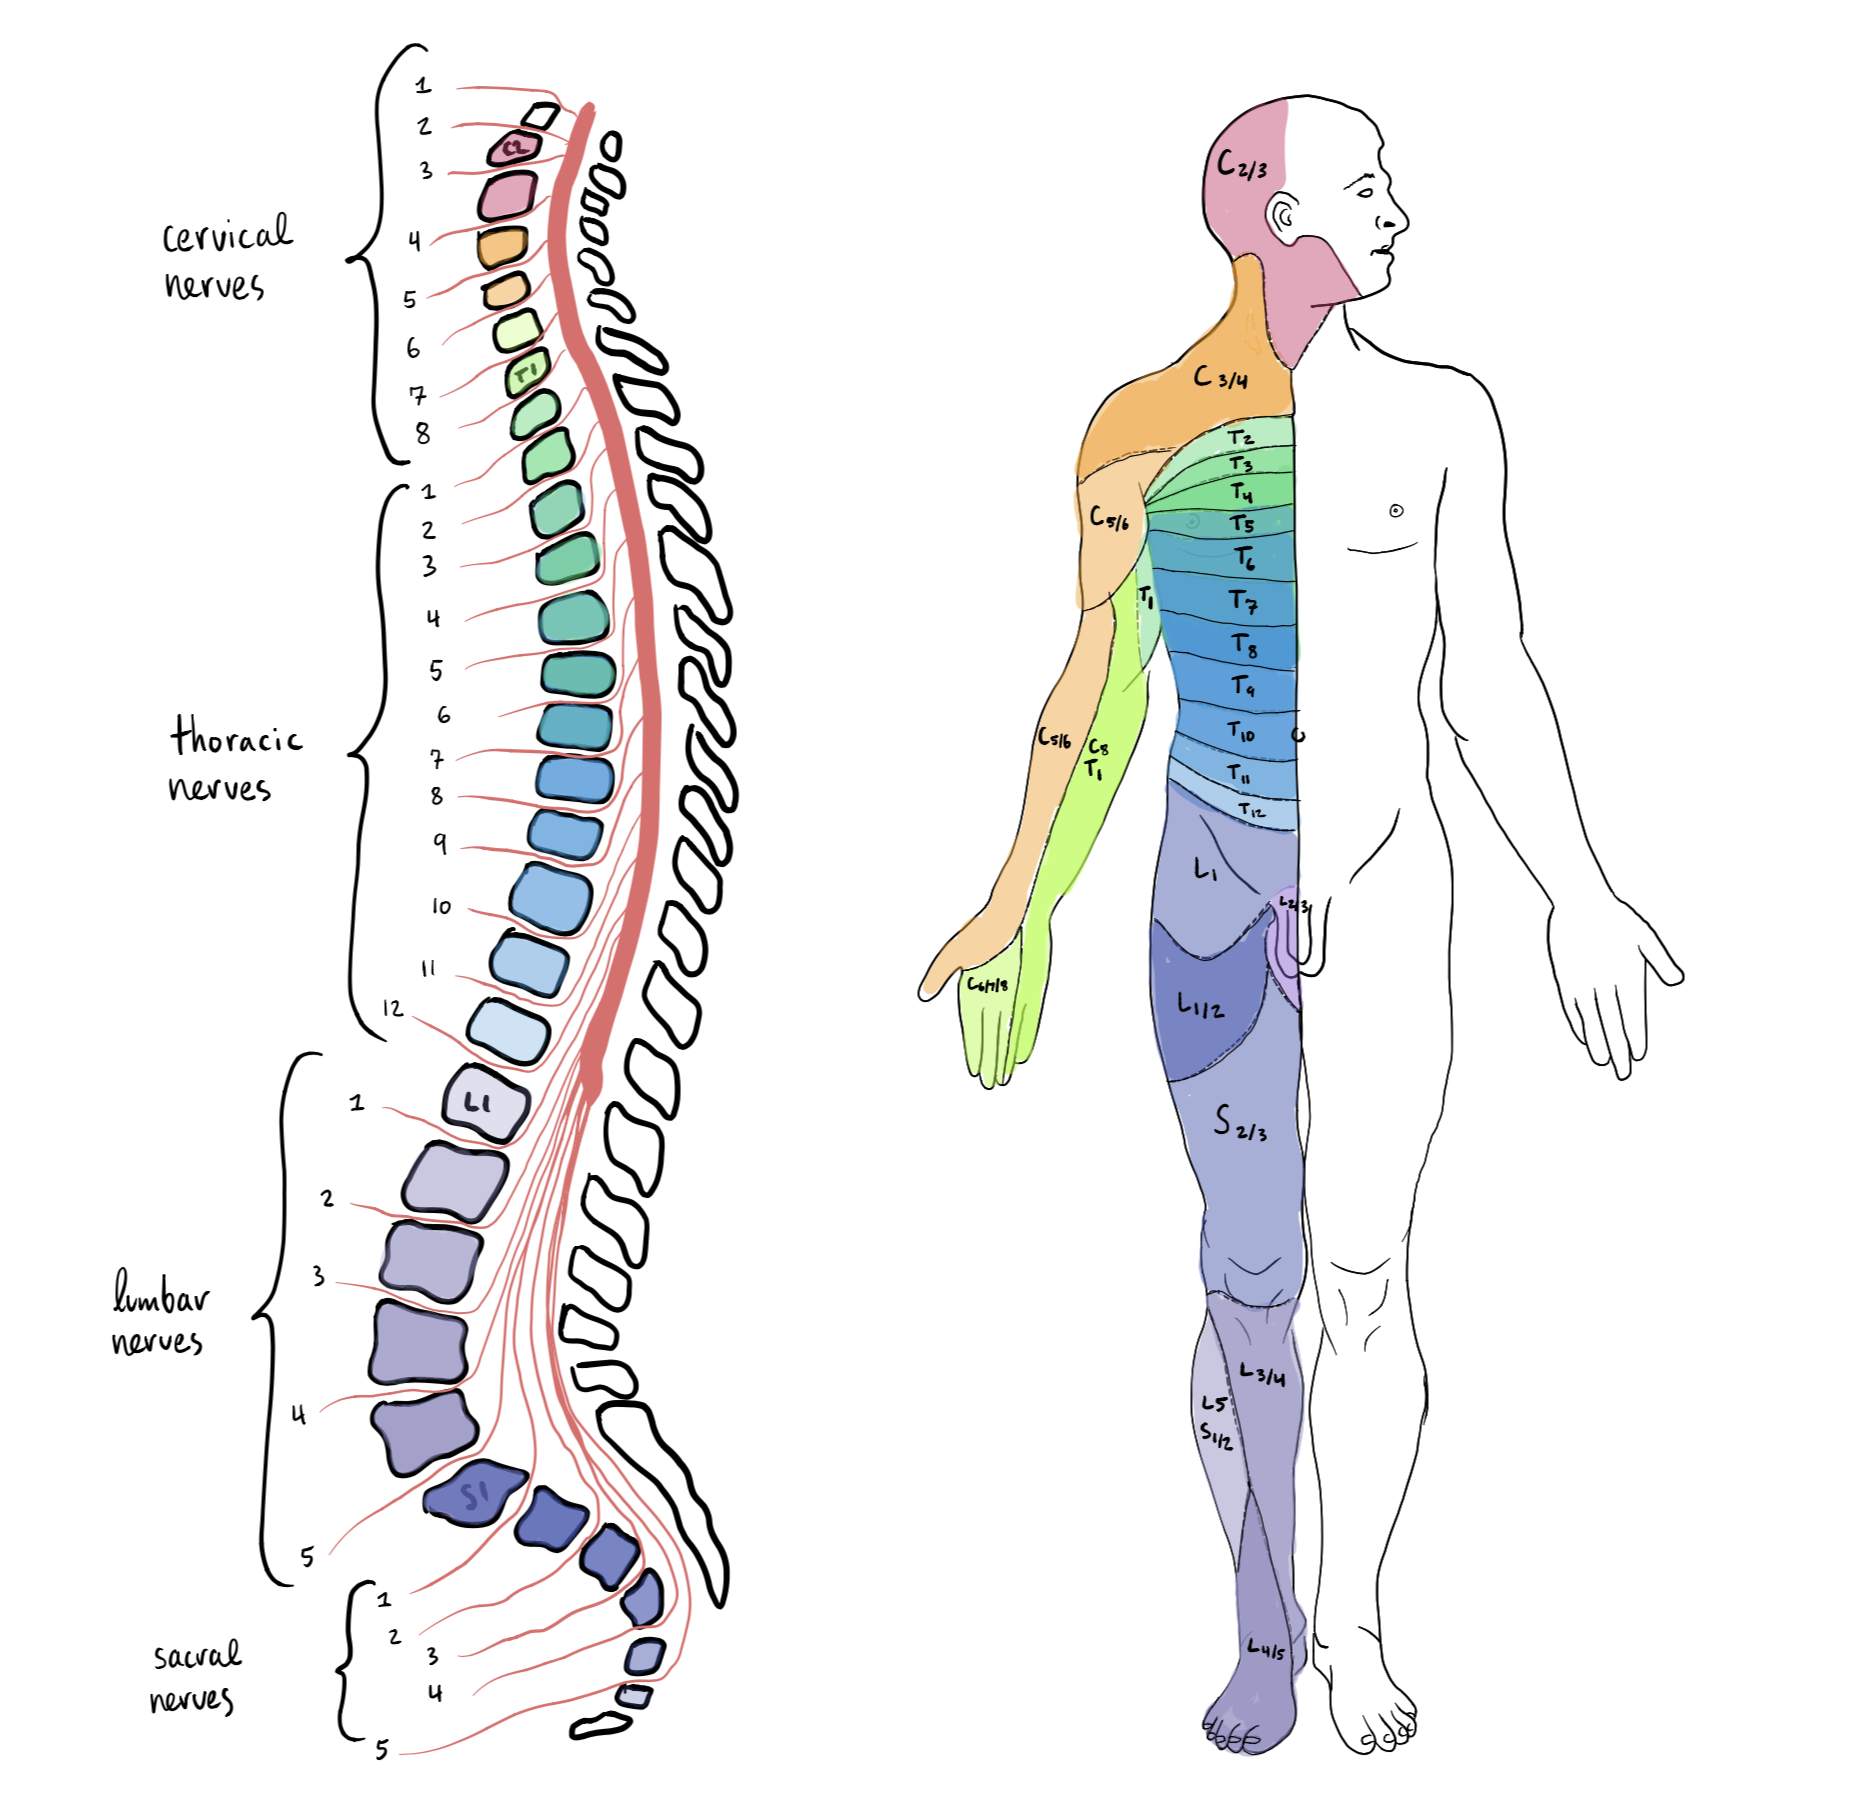 Segmentos de médula espinal en columna vertebral y áreas corporales correspondientes: 8 nervios cervicales, 12 torácicos, 5 lumbares y 5 sacros